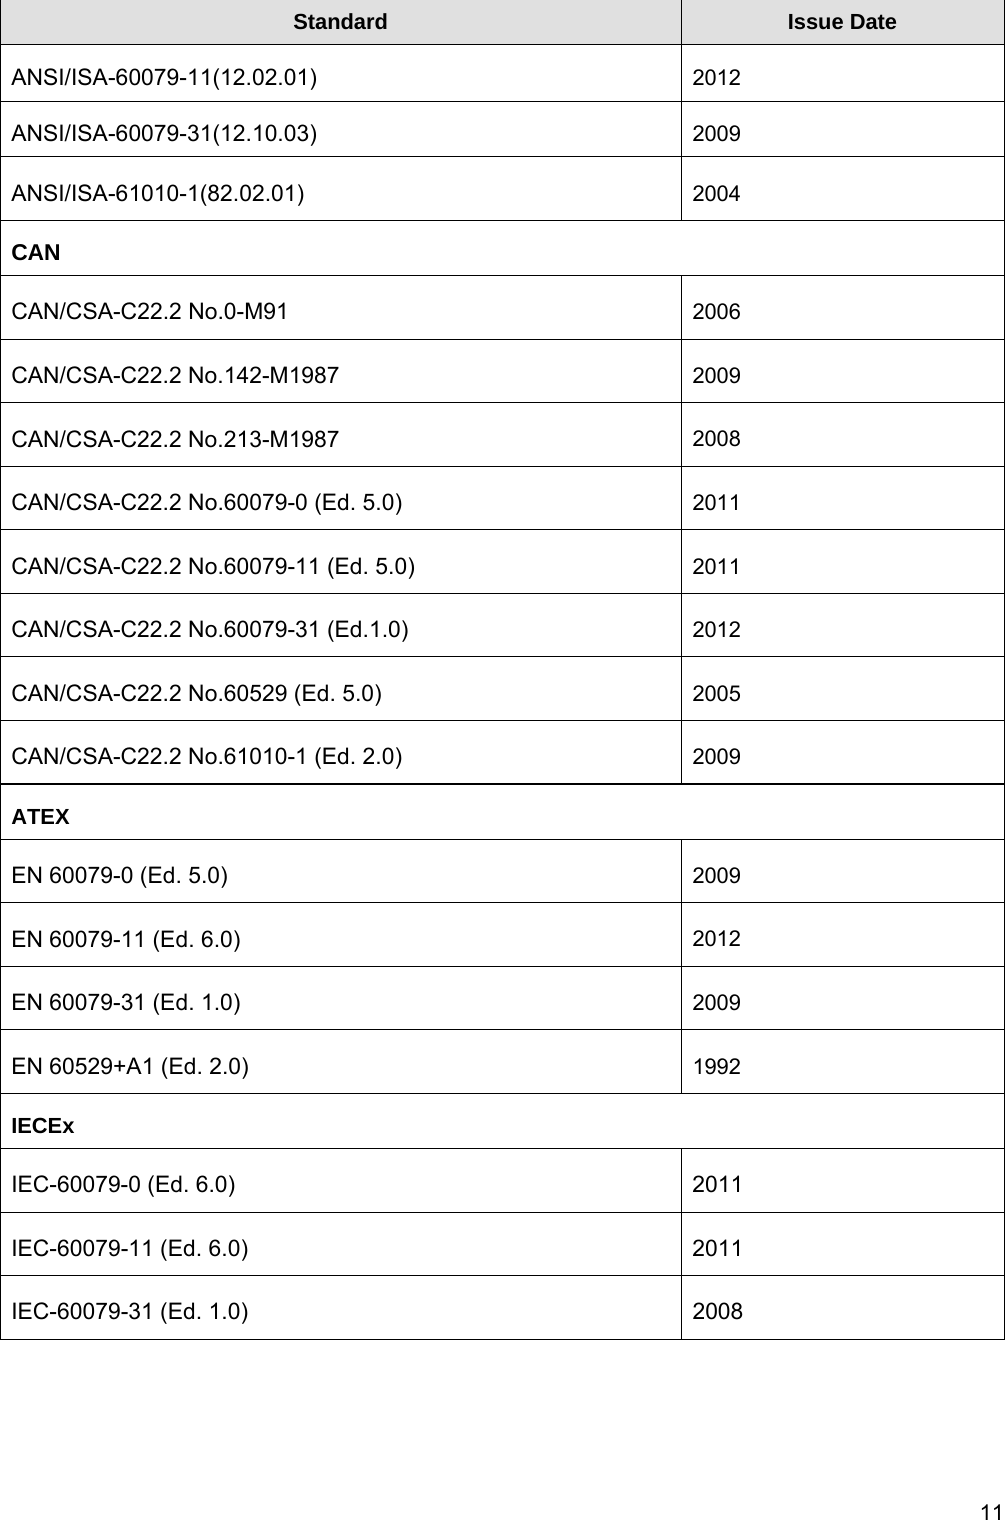   11Standard  Issue Date ANSI/ISA-60079-11(12.02.01) 2012 ANSI/ISA-60079-31(12.10.03) 2009 ANSI/ISA-61010-1(82.02.01)  2004 CAN CAN/CSA-C22.2 No.0-M91  2006 CAN/CSA-C22.2 No.142-M1987  2009 CAN/CSA-C22.2 No.213-M1987  2008 CAN/CSA-C22.2 No.60079-0 (Ed. 5.0)  2011 CAN/CSA-C22.2 No.60079-11 (Ed. 5.0)  2011 CAN/CSA-C22.2 No.60079-31 (Ed.1.0)  2012 CAN/CSA-C22.2 No.60529 (Ed. 5.0)  2005 CAN/CSA-C22.2 No.61010-1 (Ed. 2.0)  2009 ATEX EN 60079-0 (Ed. 5.0)  2009 EN 60079-11 (Ed. 6.0)  2012 EN 60079-31 (Ed. 1.0)  2009 EN 60529+A1 (Ed. 2.0)  1992 IECEx IEC-60079-0 (Ed. 6.0)  2011 IEC-60079-11 (Ed. 6.0)  2011 IEC-60079-31 (Ed. 1.0)  2008  